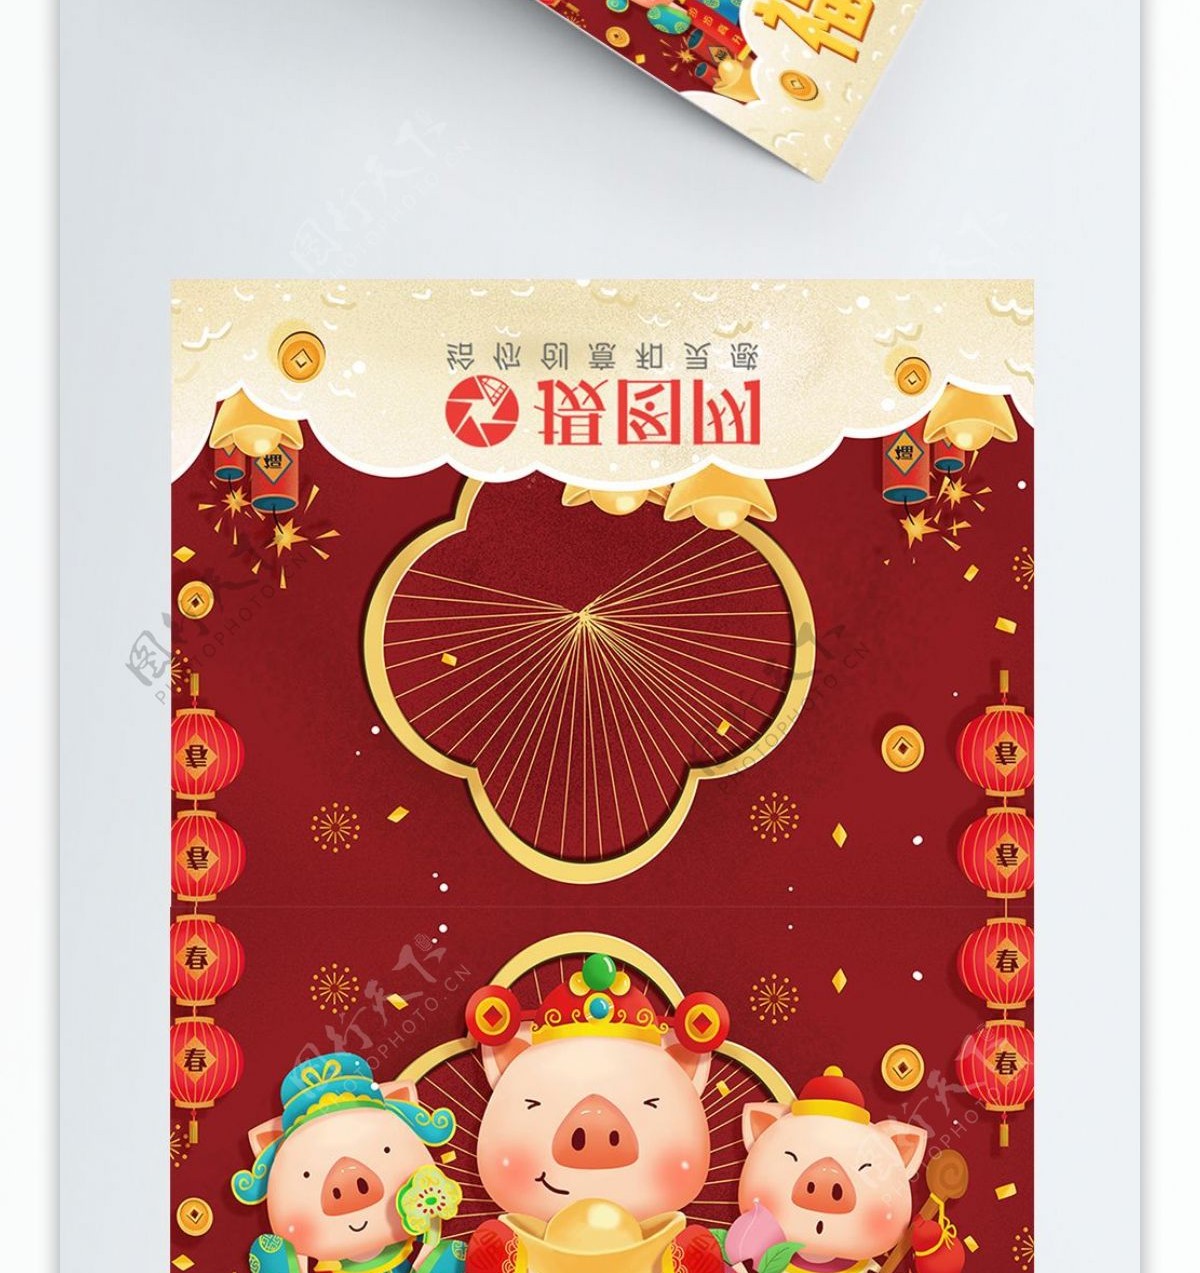 新年猪年福禄寿春节节日喜庆贺卡